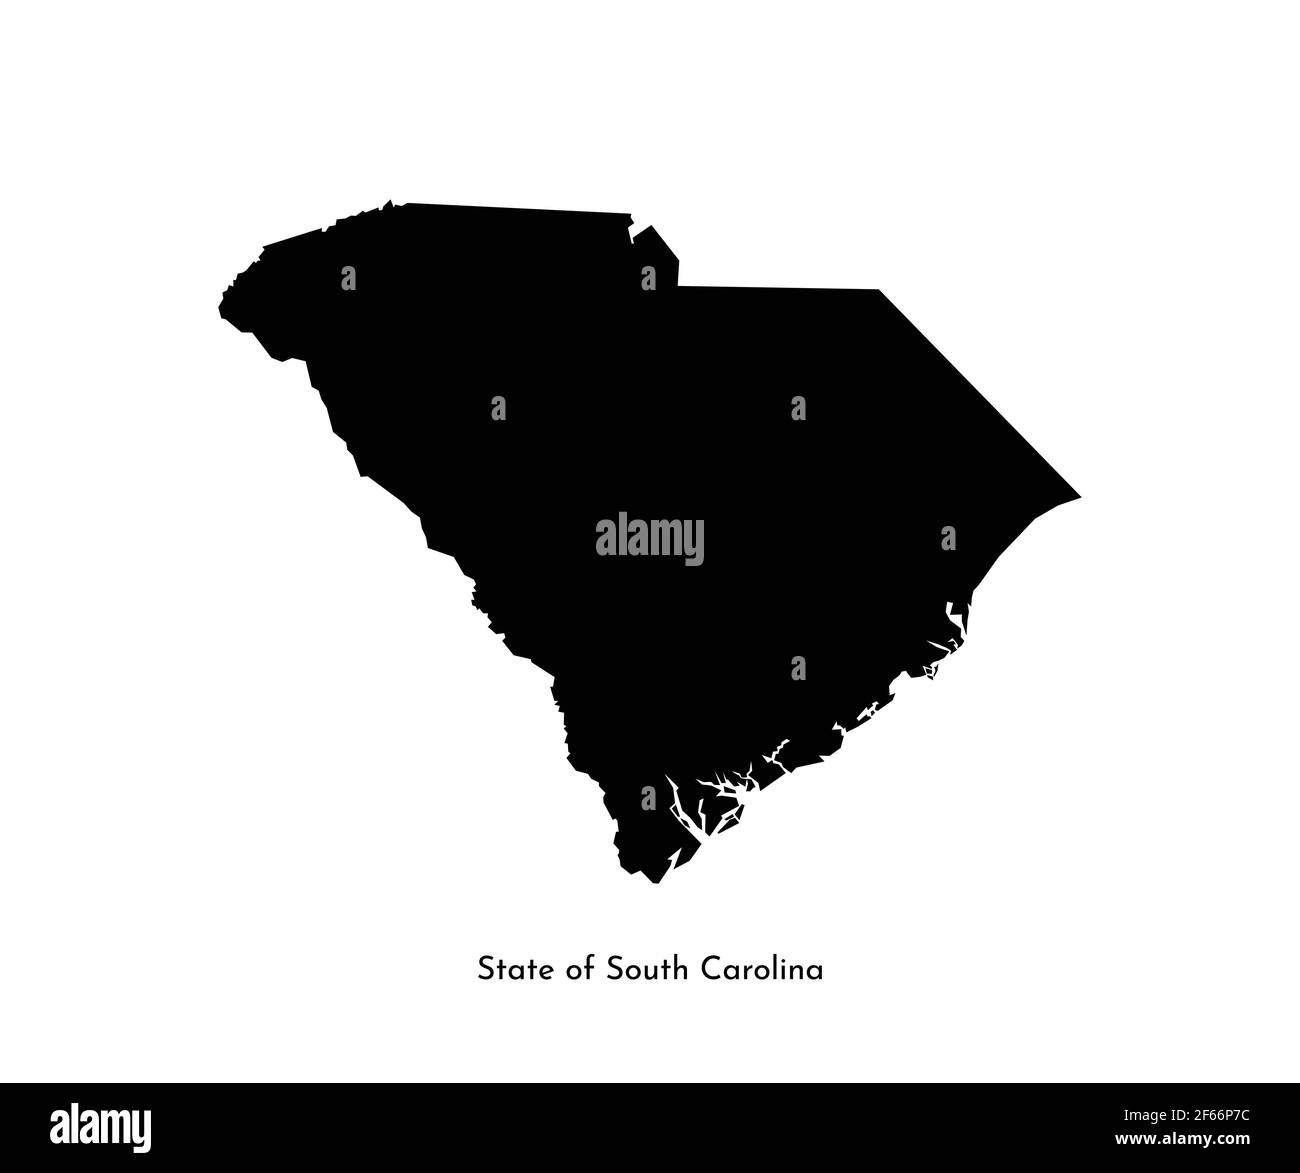 Icône d'illustration simplifiée isolée vectorielle avec silhouette noire de l'État de Caroline du Sud (États-Unis). Arrière-plan blanc Illustration de Vecteur